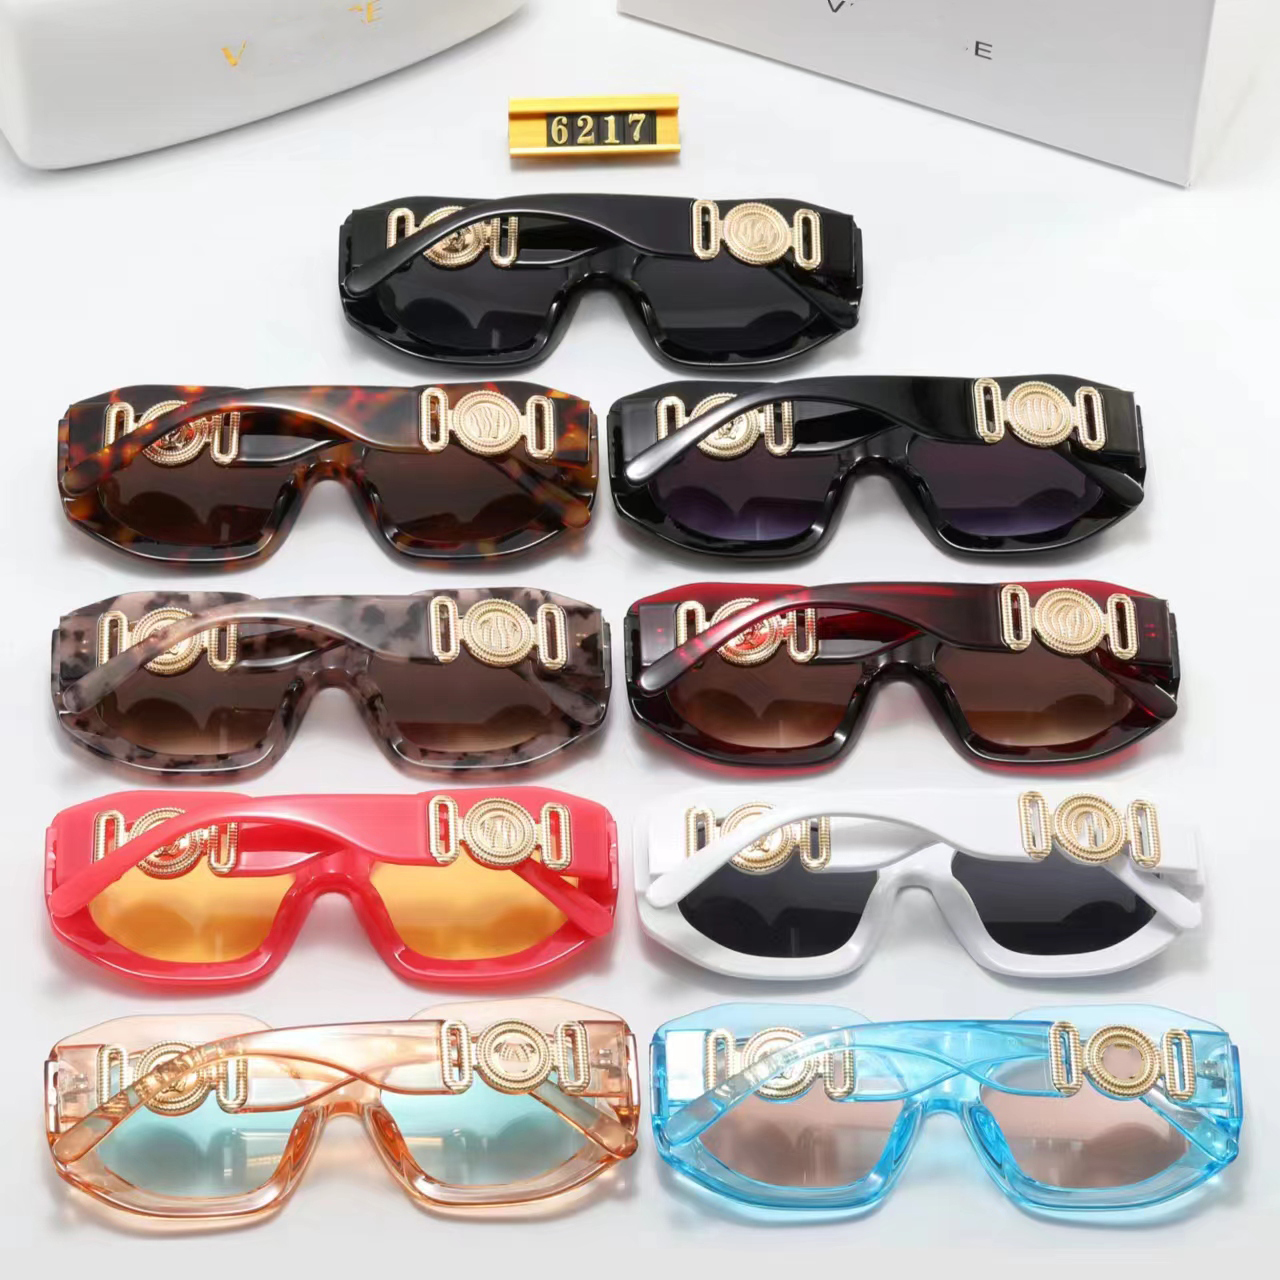 Дизайнерские брендовые солнцезащитные очки Роскошные солнцезащитные очки Высококачественные очки Женские очки Мужские солнцезащитные очки UV400 линзы Унисекс Новые 6217 Персонализированные солнцезащитные очки на голову 9 цветов